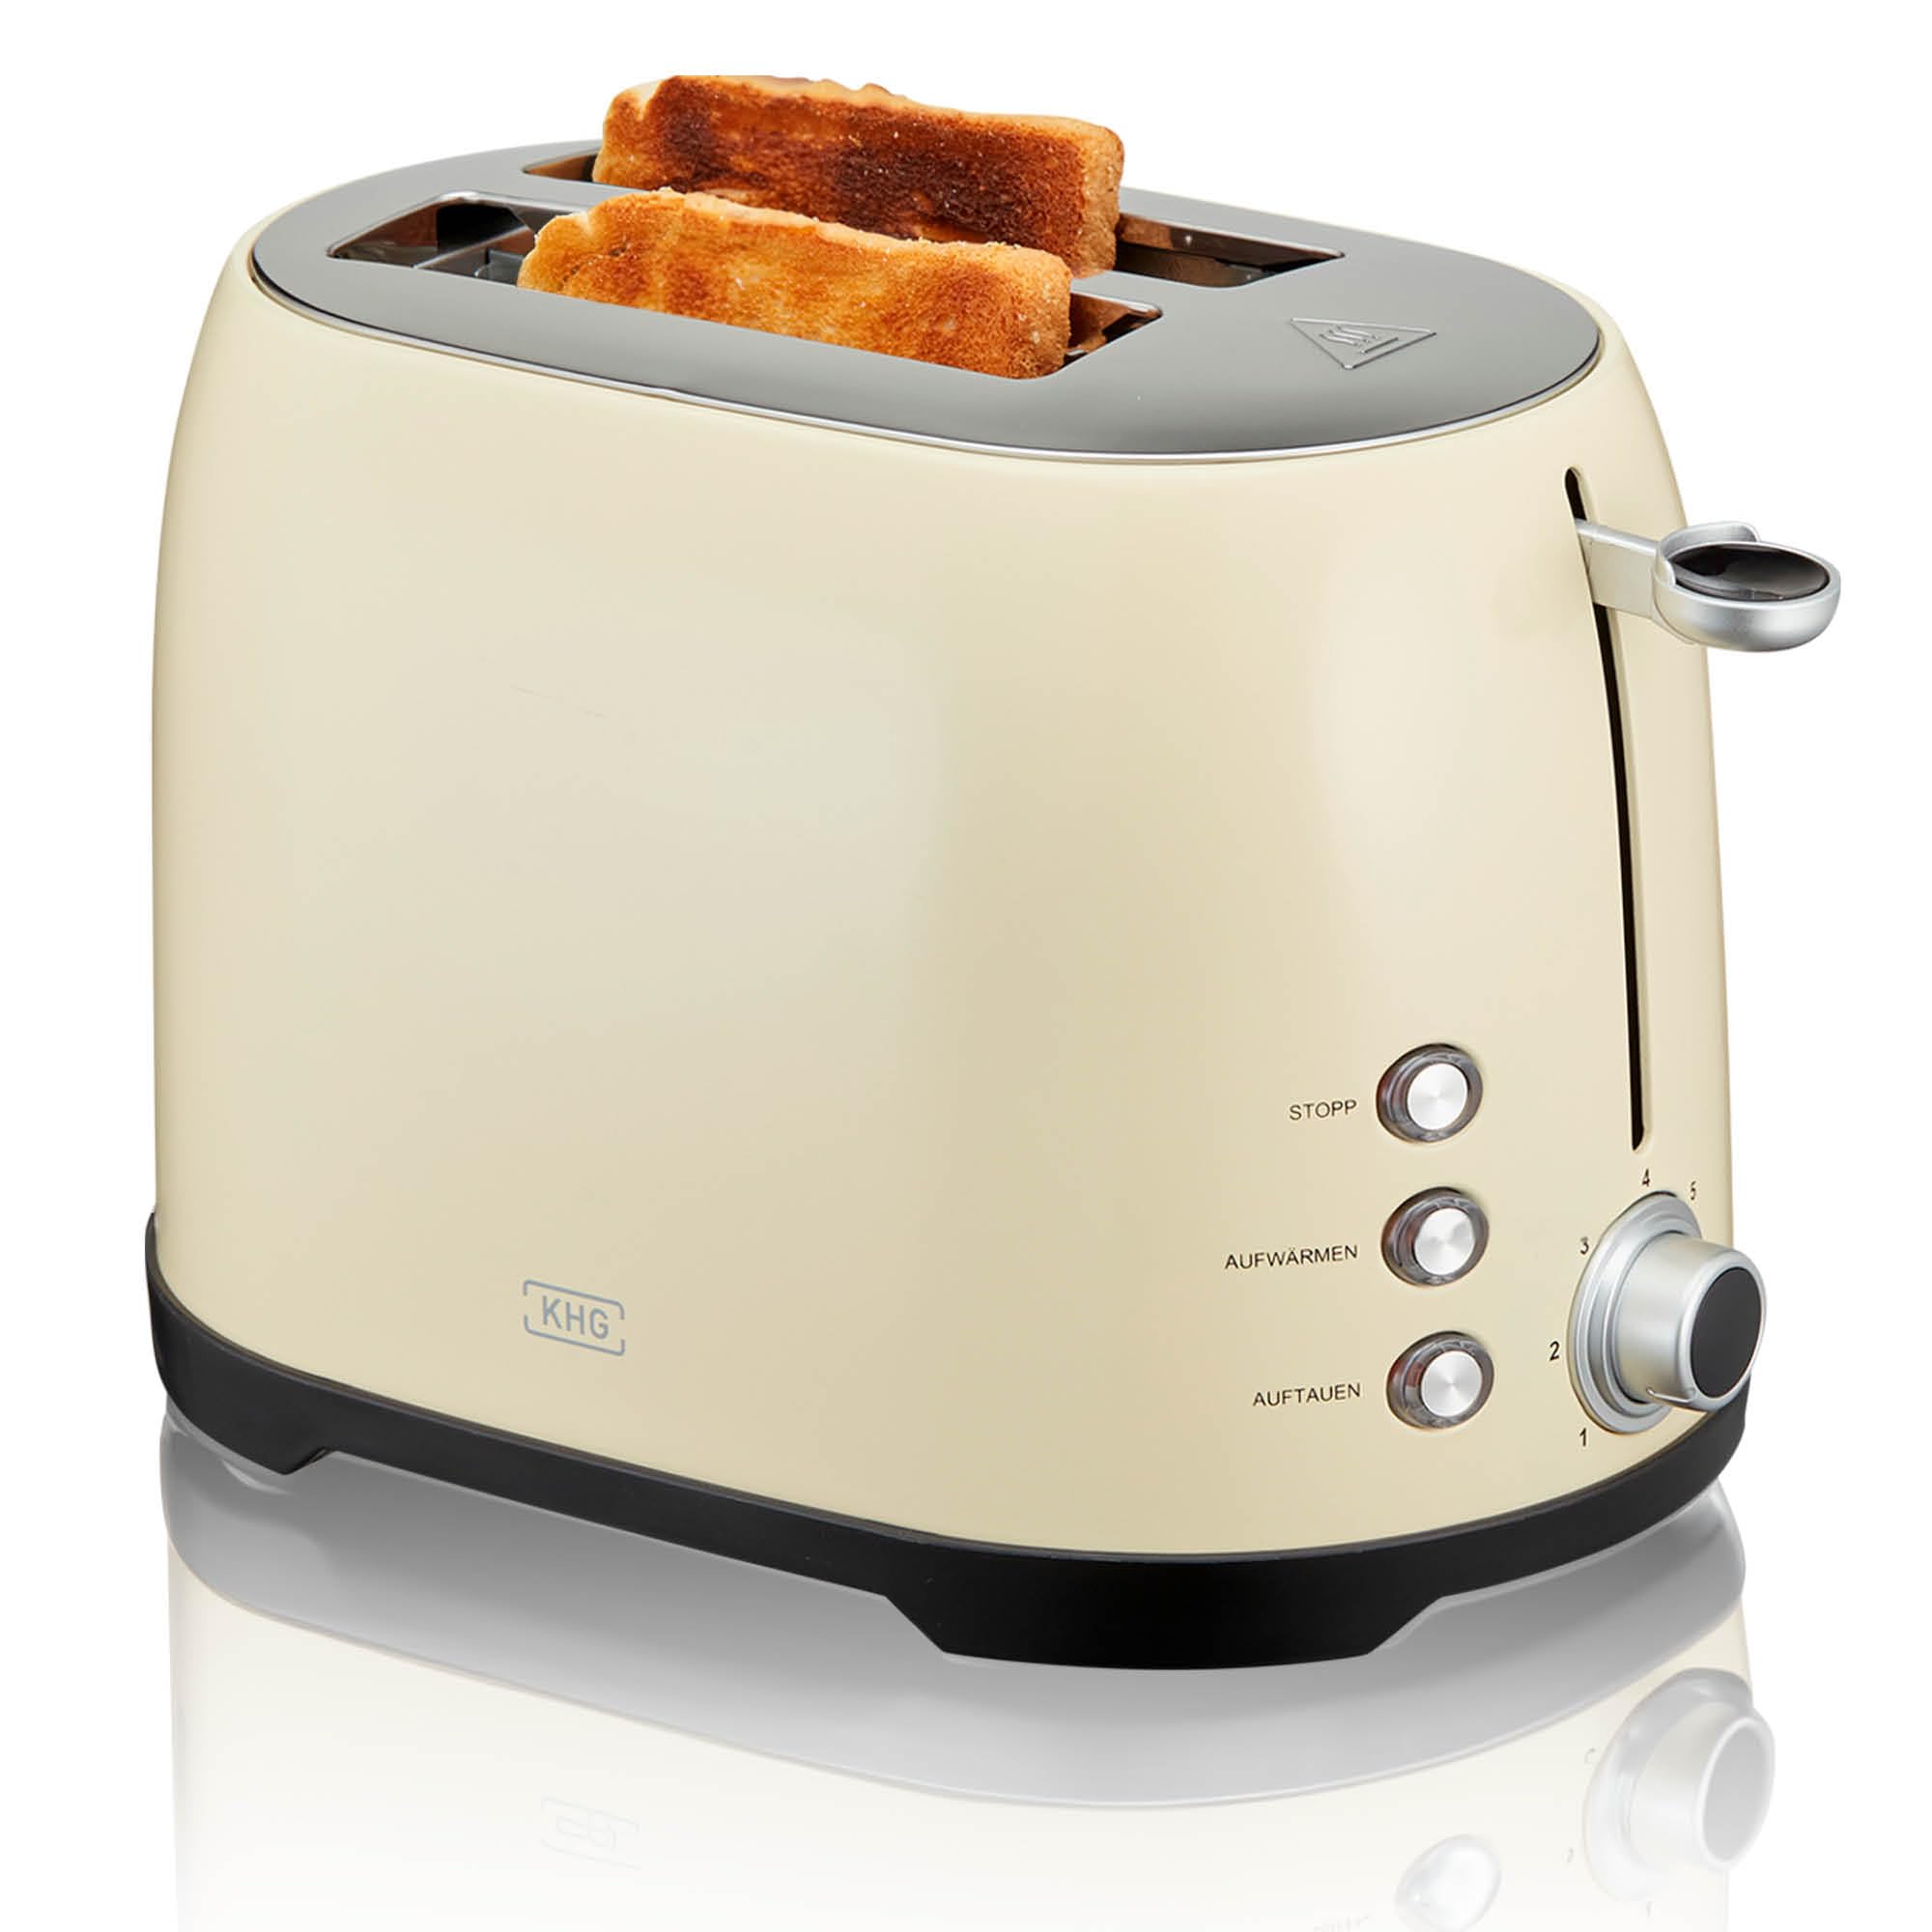 KHG Toaster TO-858 CE | Toaster 2 Scheiben Creme 800 W | mit Brötchenaufsatz, 7 Röstgradstufen mit Bräunungsgradkontrolle, Krümelfach, Auftau- und Aufwärmfunktion